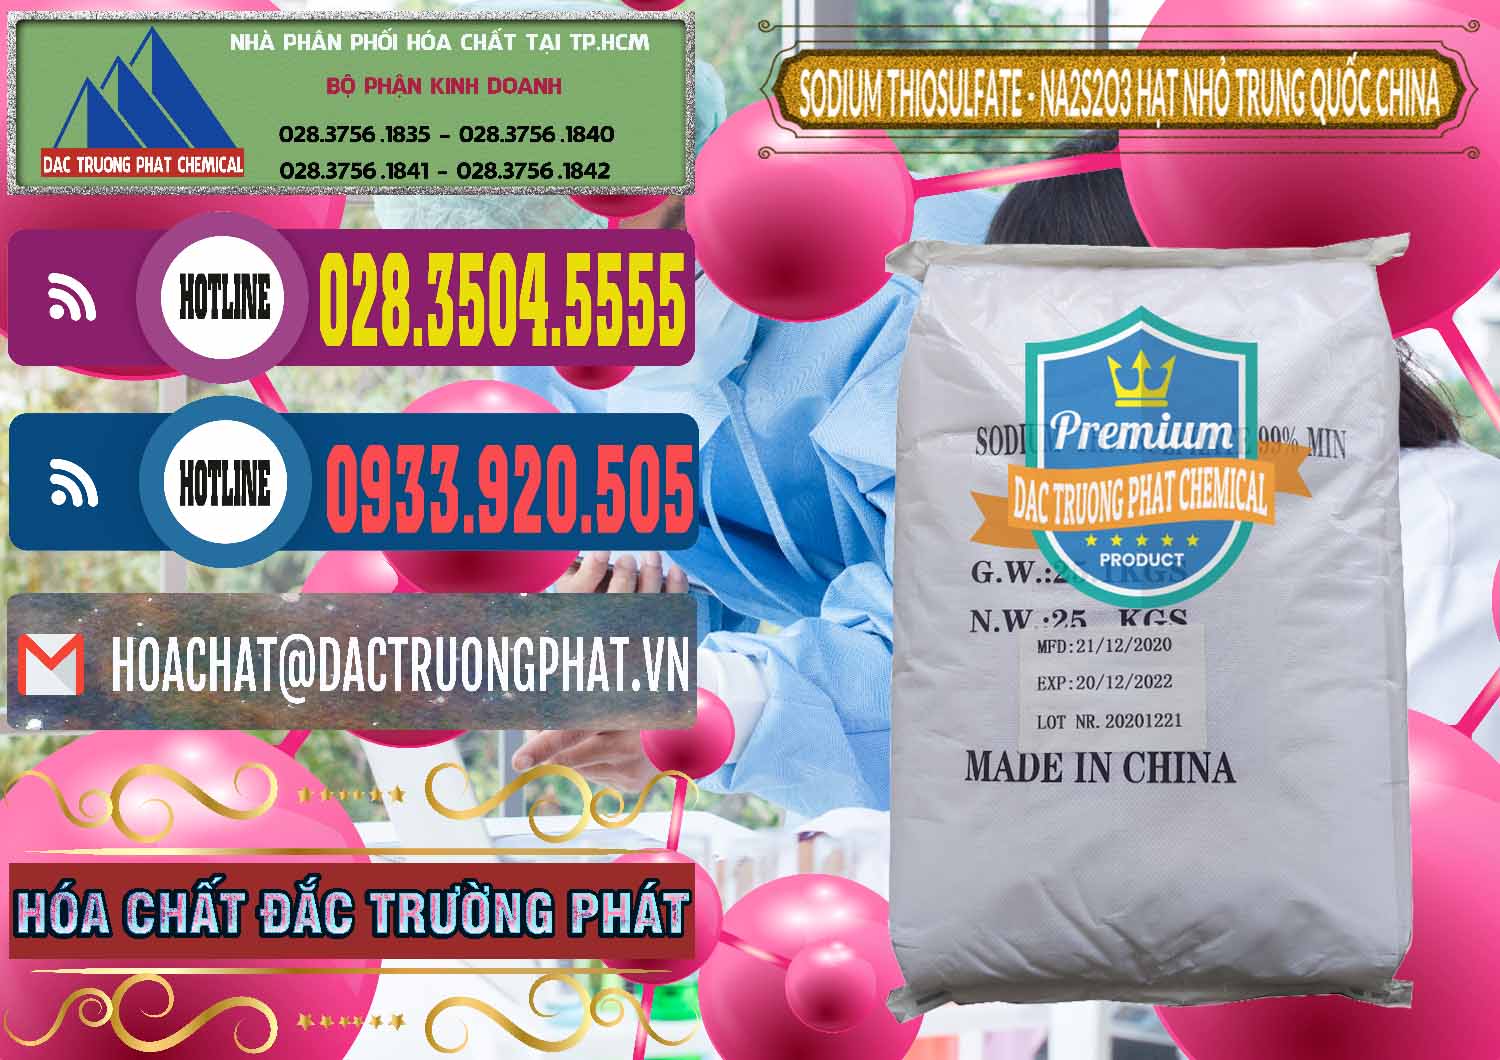 Công ty kinh doanh _ bán Sodium Thiosulfate - NA2S2O3 Hạt Nhỏ Trung Quốc China - 0204 - Nơi chuyên cung ứng ( phân phối ) hóa chất tại TP.HCM - muabanhoachat.com.vn